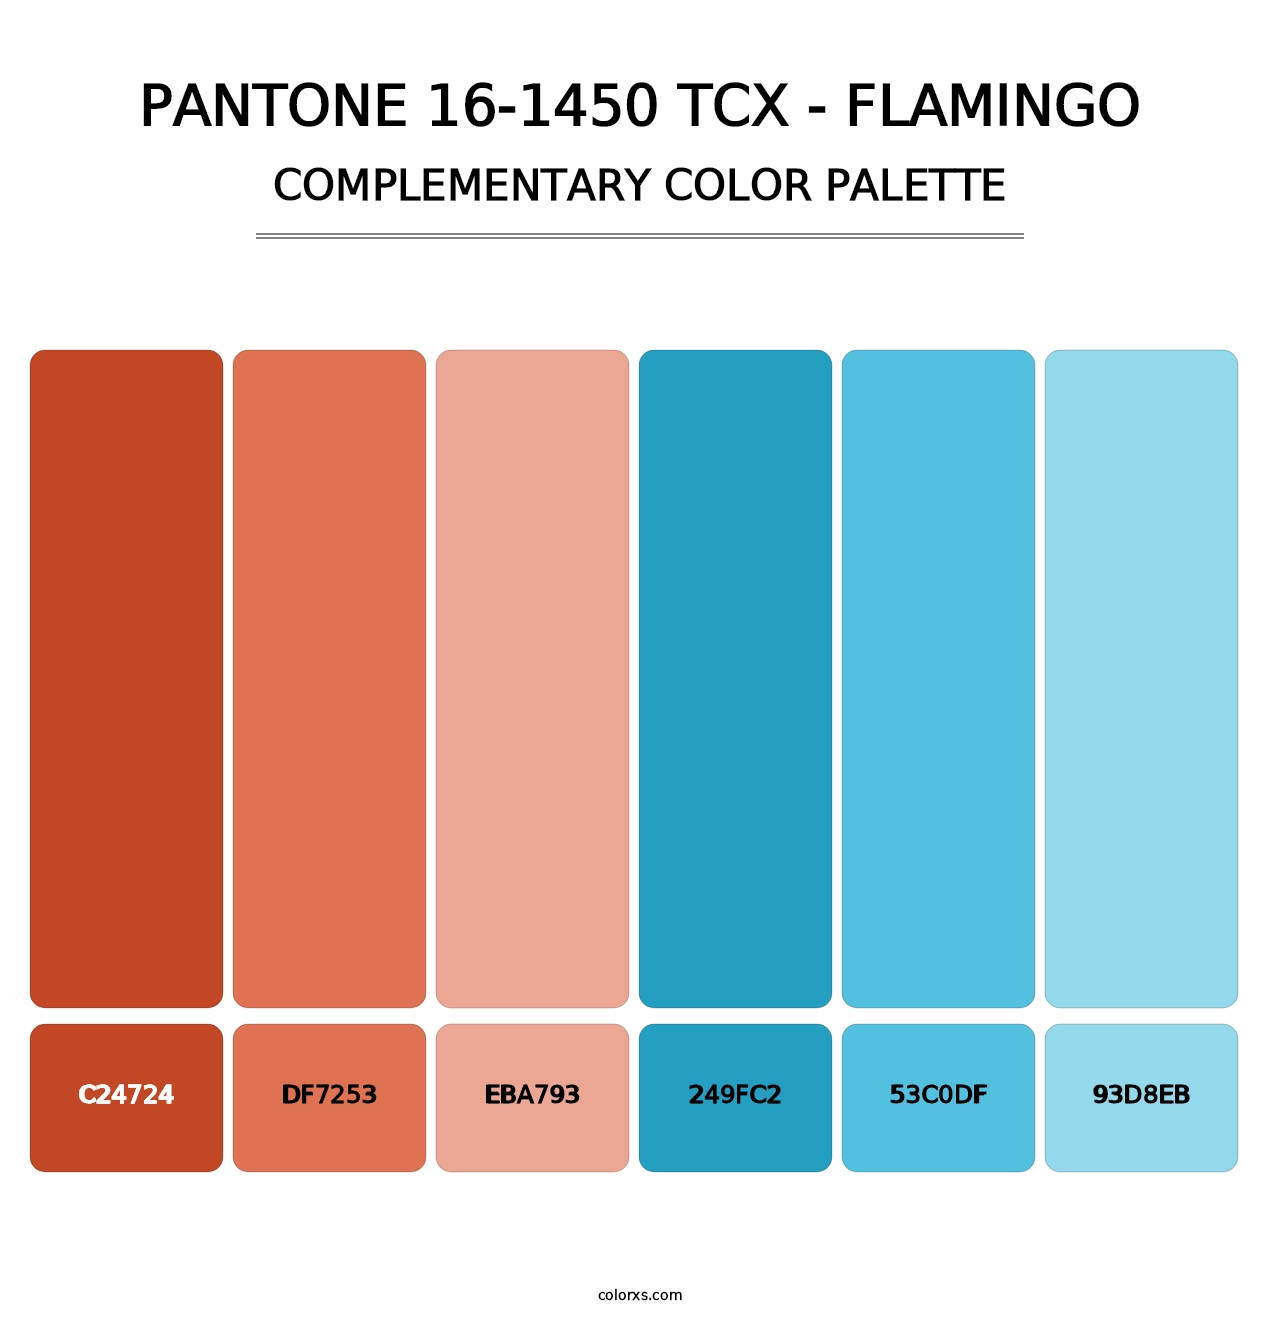 PANTONE 16-1450 TCX - Flamingo - Complementary Color Palette